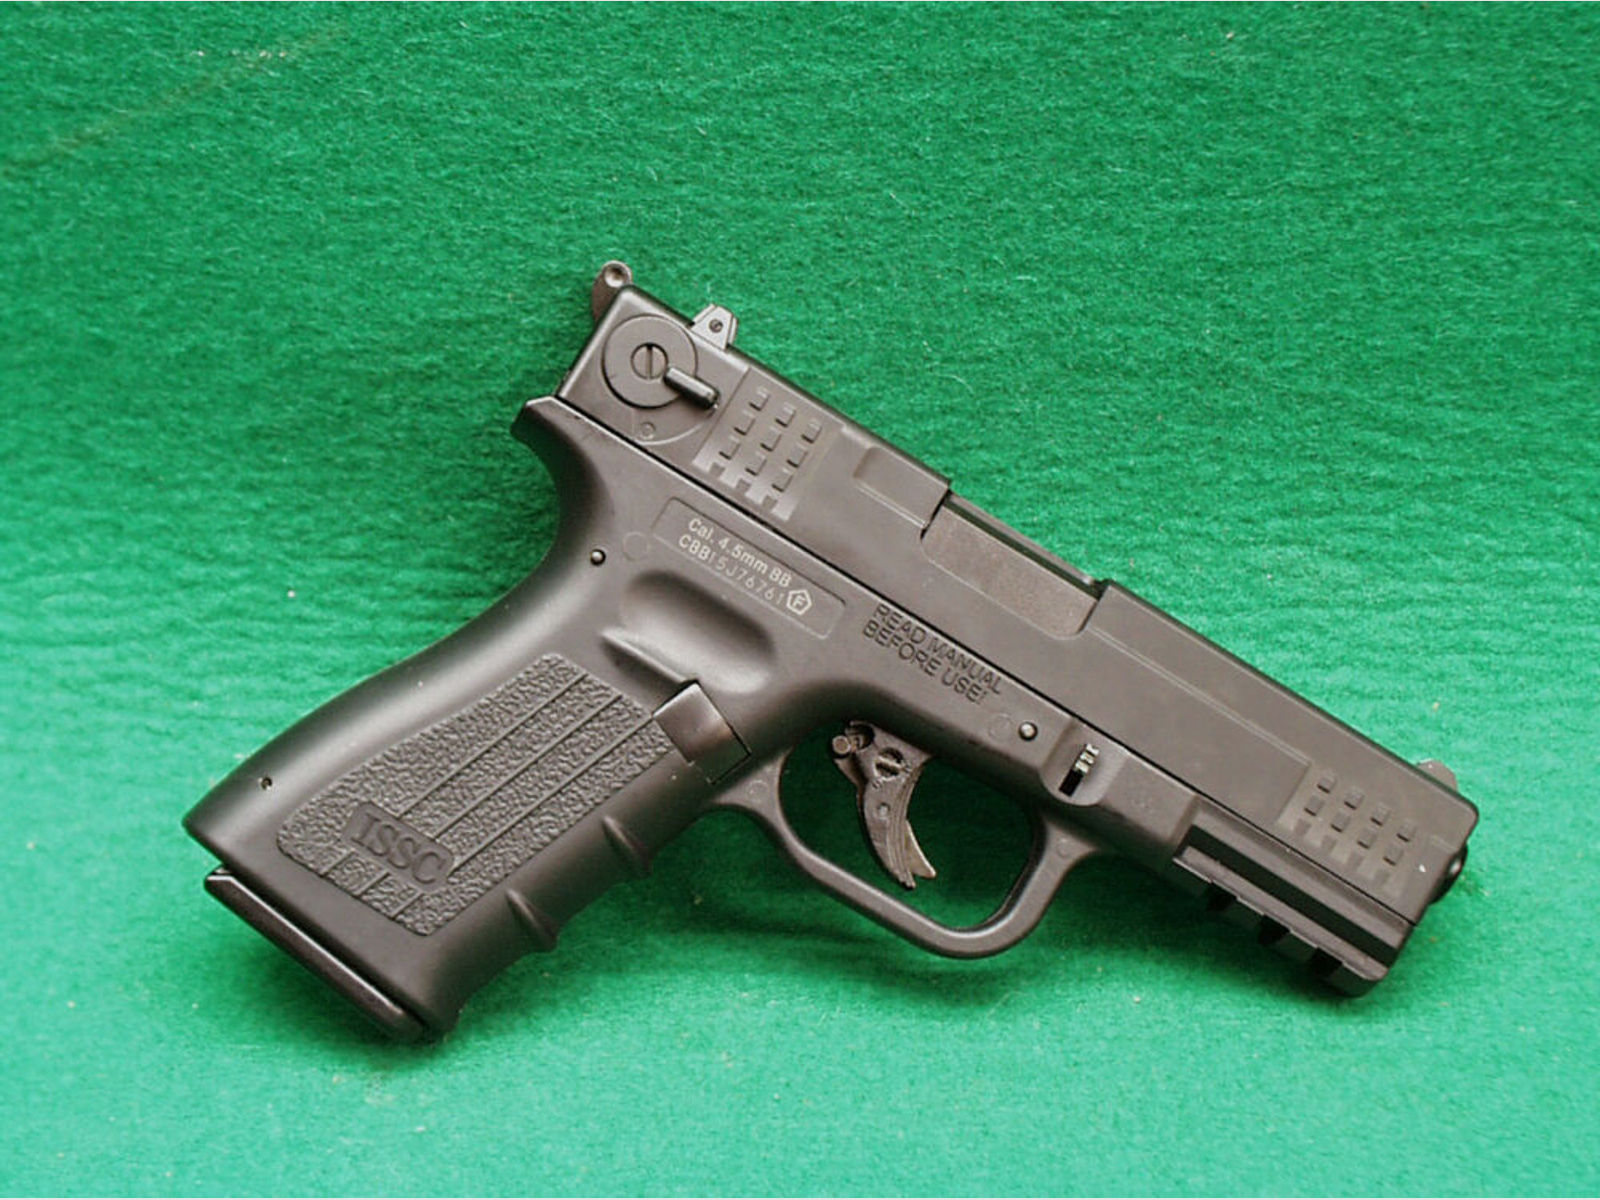 ISSC	 Tolmar M22 4,5mmBB CO2 Pistole